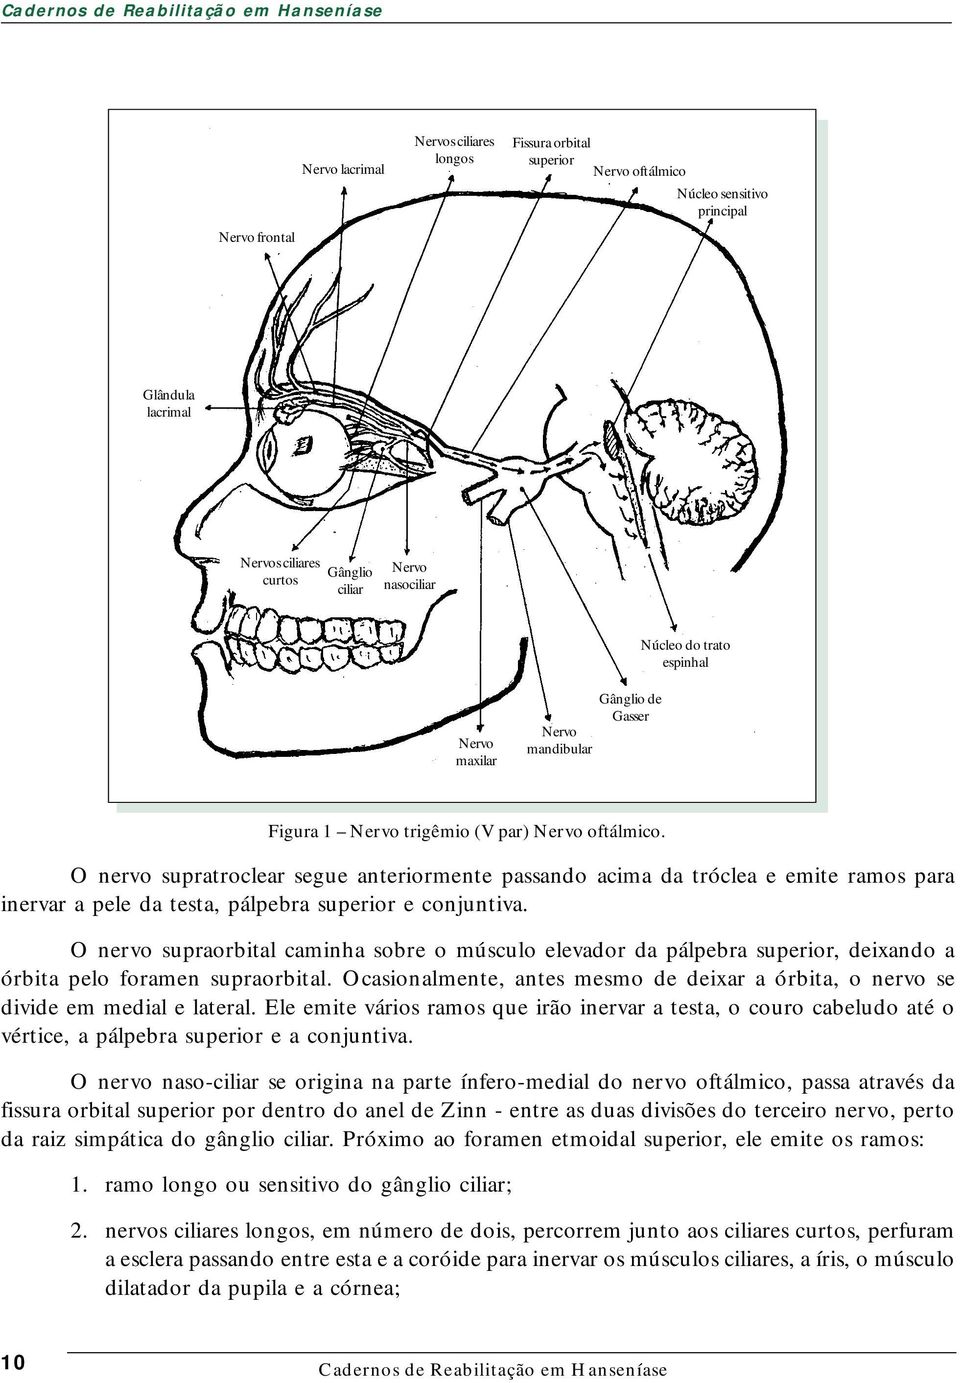 O nervo supratroclear segue anteriormente passando acima da tróclea e emite ramos para inervar a pele da testa, pálpebra superior e conjuntiva.